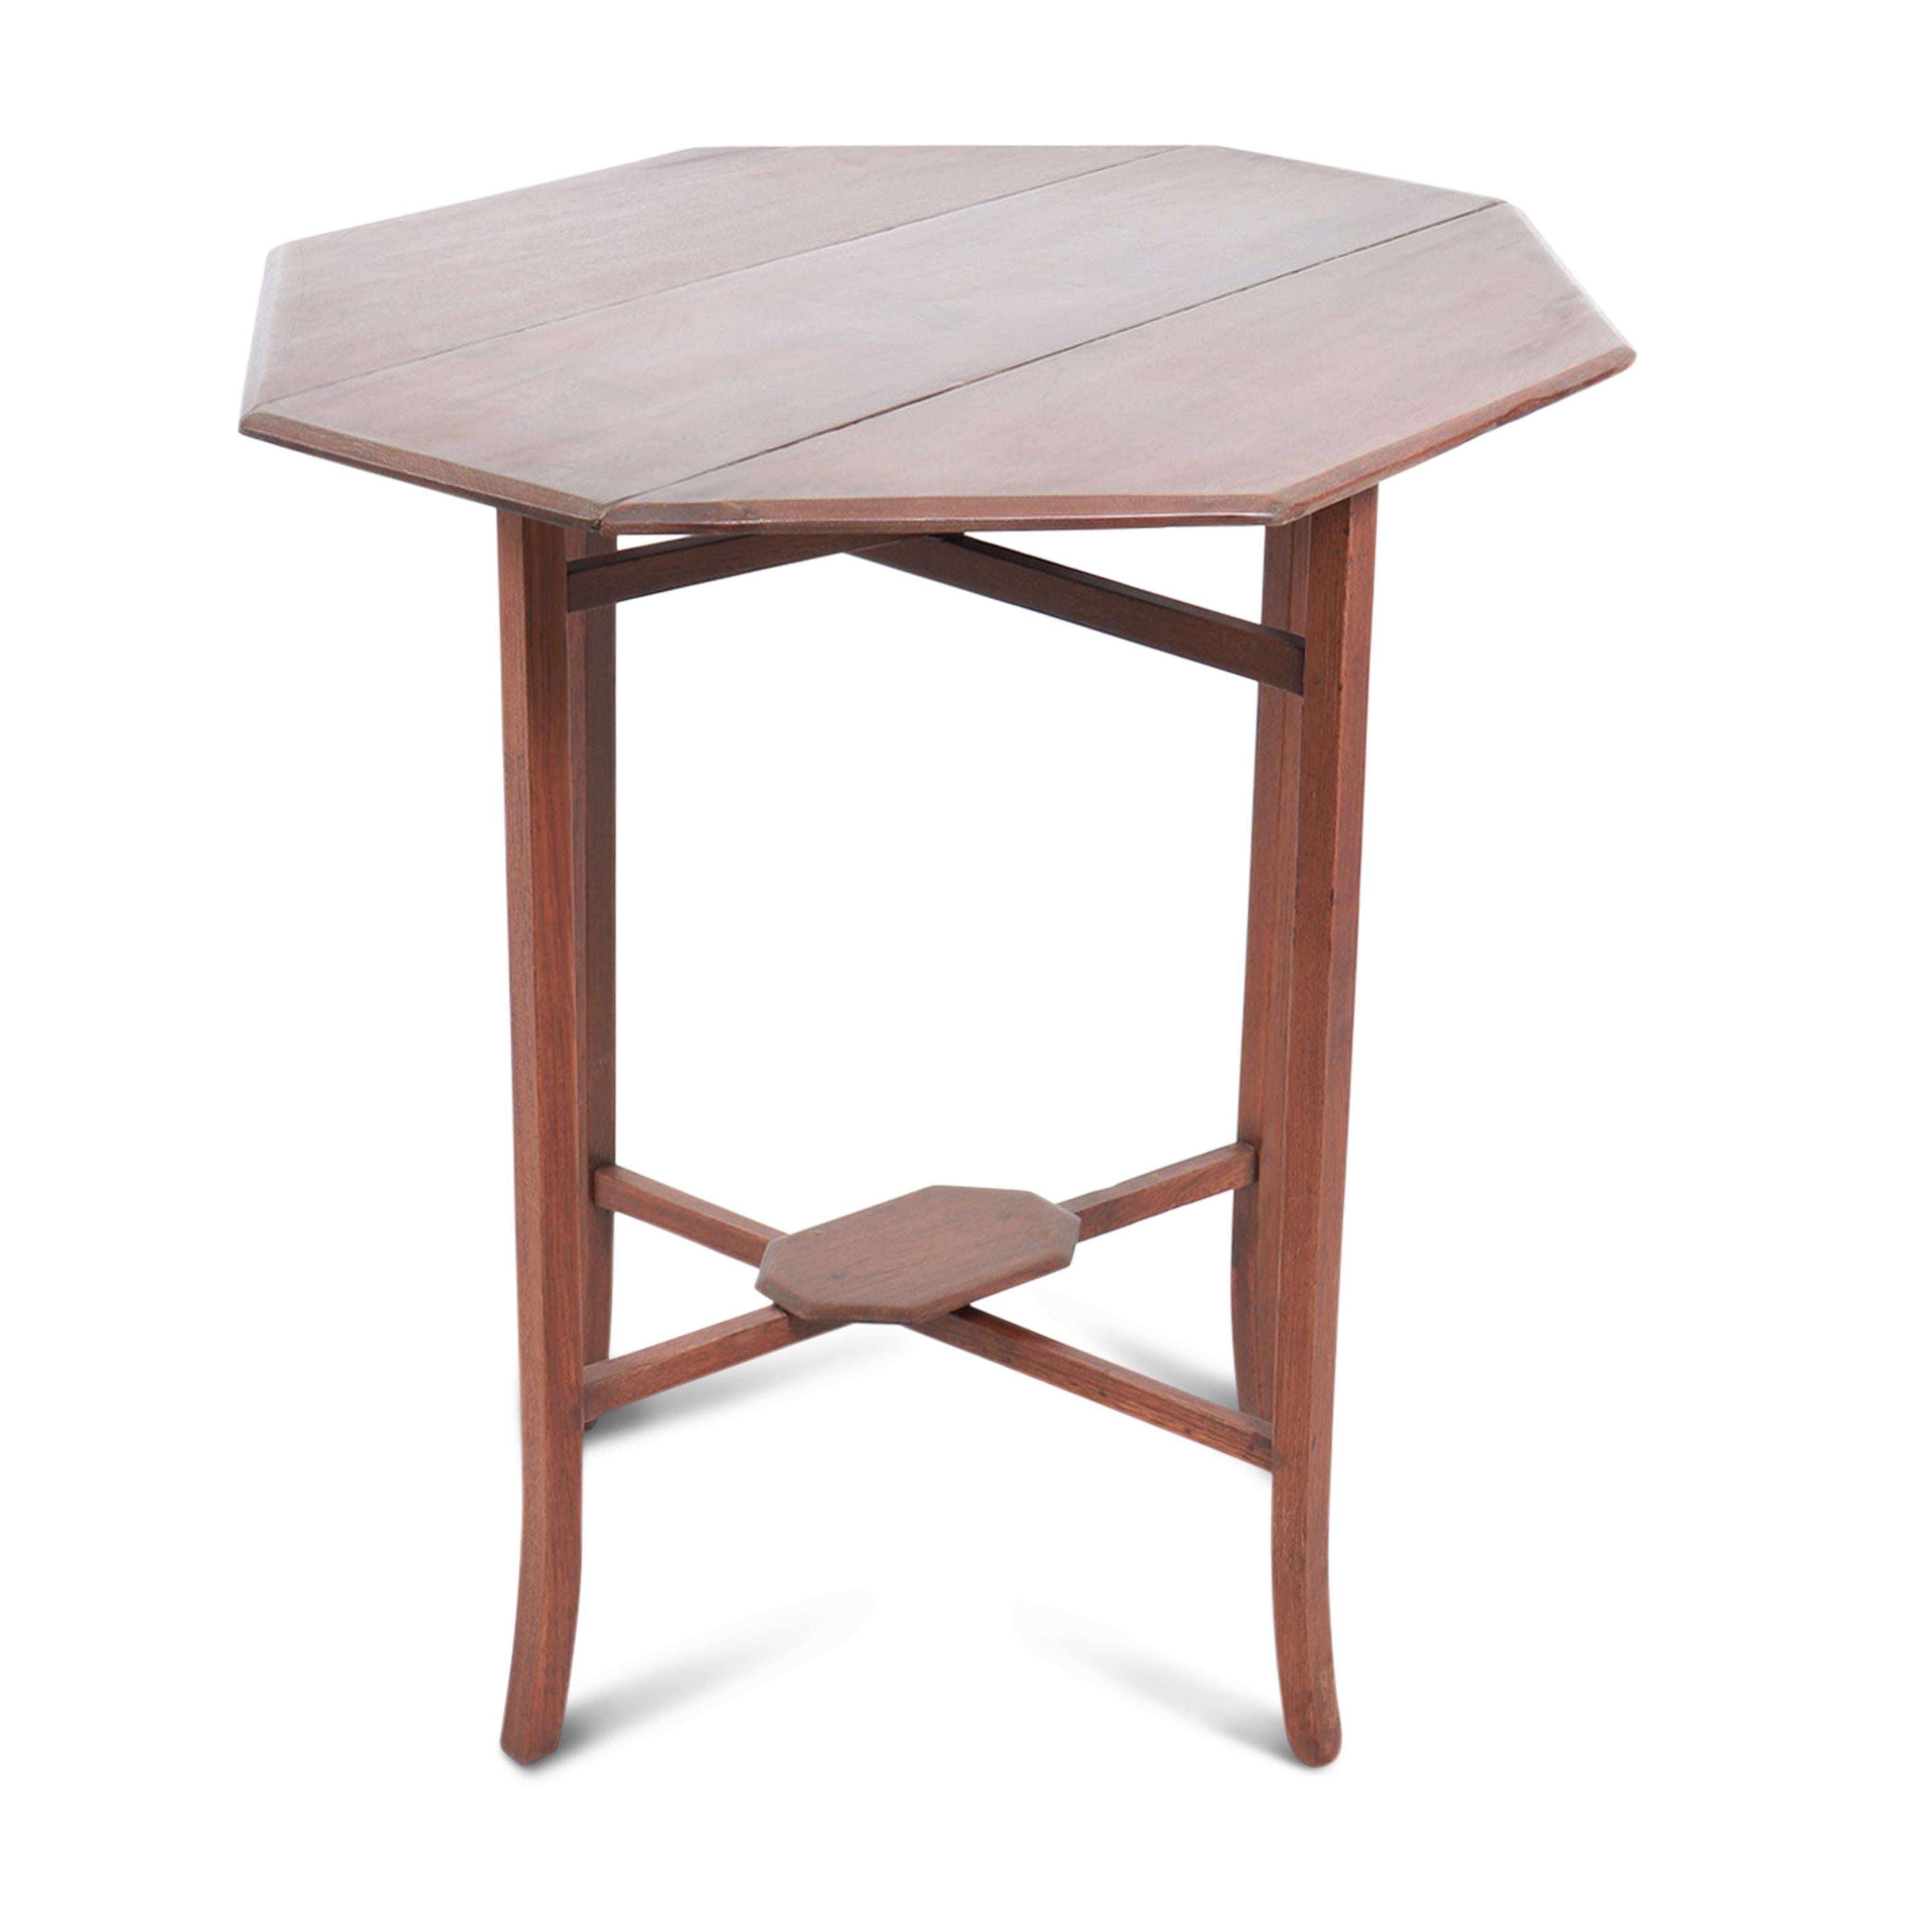 Table pliante en teck, au design minimaliste et aux lignes épurées. Cette pièce charmante et polyvalente allie fonctionnalité et qualité. 